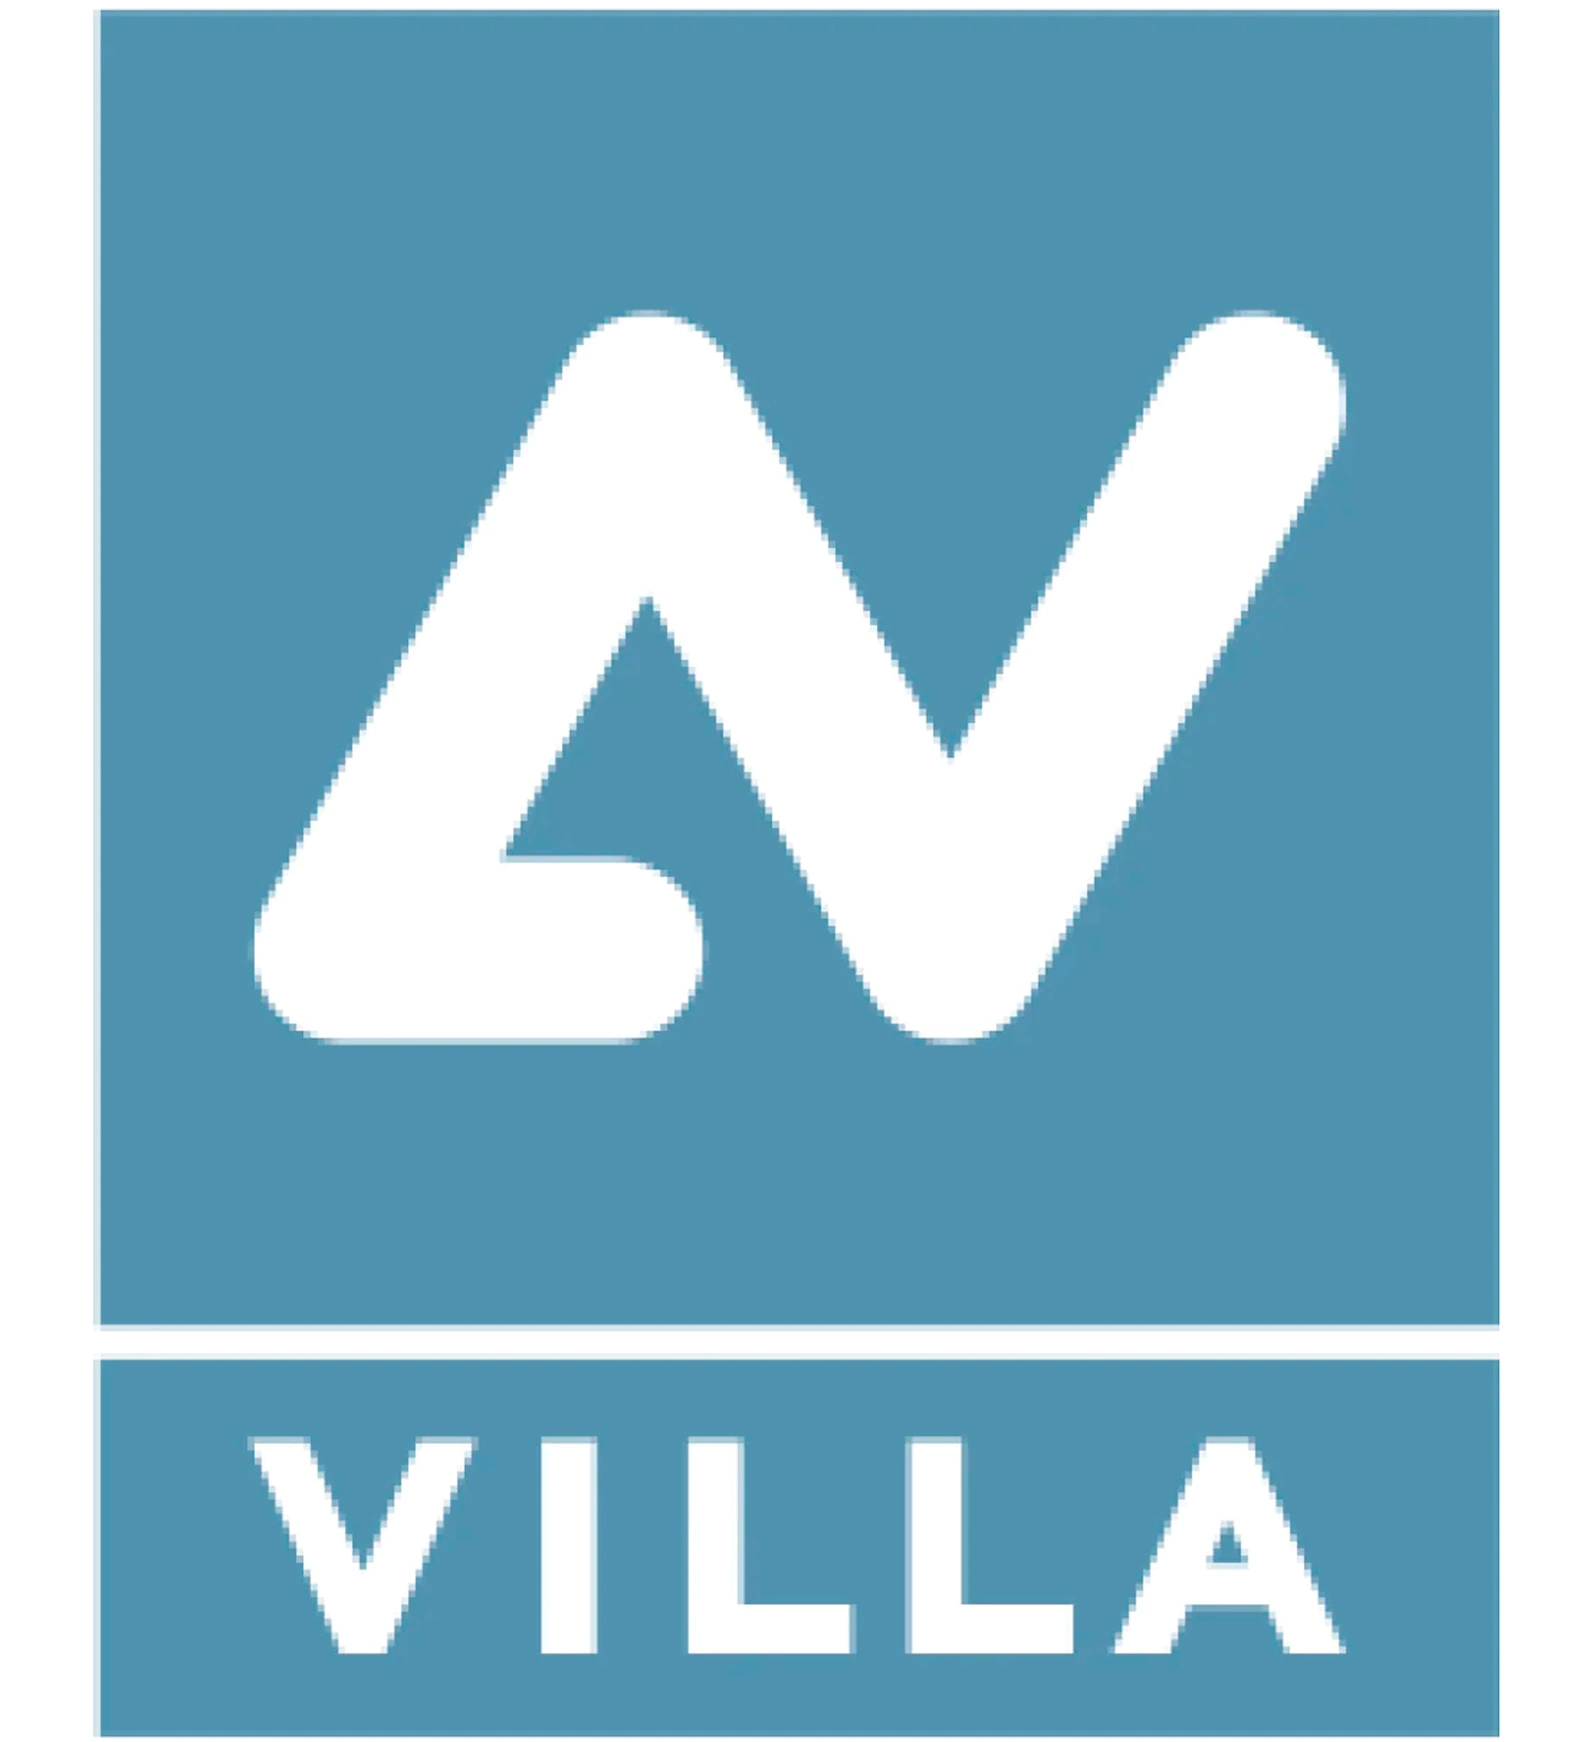 <div><strong>Villa Sistemi Medicali </strong>заснована в 1958 році паном Альфіо Вілла зі штаб-квартирою в Буччінаско (Італія),&nbsp; починалася як компанія, яка займалася розробкою діагностичних радіологічних систем. Після злиття кількох компаній, якими керує Gruppo Villa, таких як Eurostrazza, Fiad, Fao та Joint, <strong>Villa Sistemi Medicali </strong>була заснована в 1990 році як опорний центр, здатний цінувати конкретний досвід, набутий у різних секторах.<br><br>Сьогодні <strong>Villa Sistemi Medicali</strong> продовжує керуватися динамічним підприємницьким духом, передовими концепціями, централізованими послугами та диверсифікованим виробництвом як ключовими характеристиками, що дозволяють компанії виходити на внутрішні та міжнародні ринки. Встановлення суворої системи якості, зростаюча наукова відданість дослідженням і прикладним сферам, а також глибоке маркетингове знання потреб клієнтів забезпечують консолідацію компанії як важливого італійського виробника<strong> радіологічних пристроїв</strong> і як одного з європейських лідерів, з розгалуженою дистриб'юторською <strong>мережею по всьому світу (більше 90 країн).&nbsp;</strong></div>